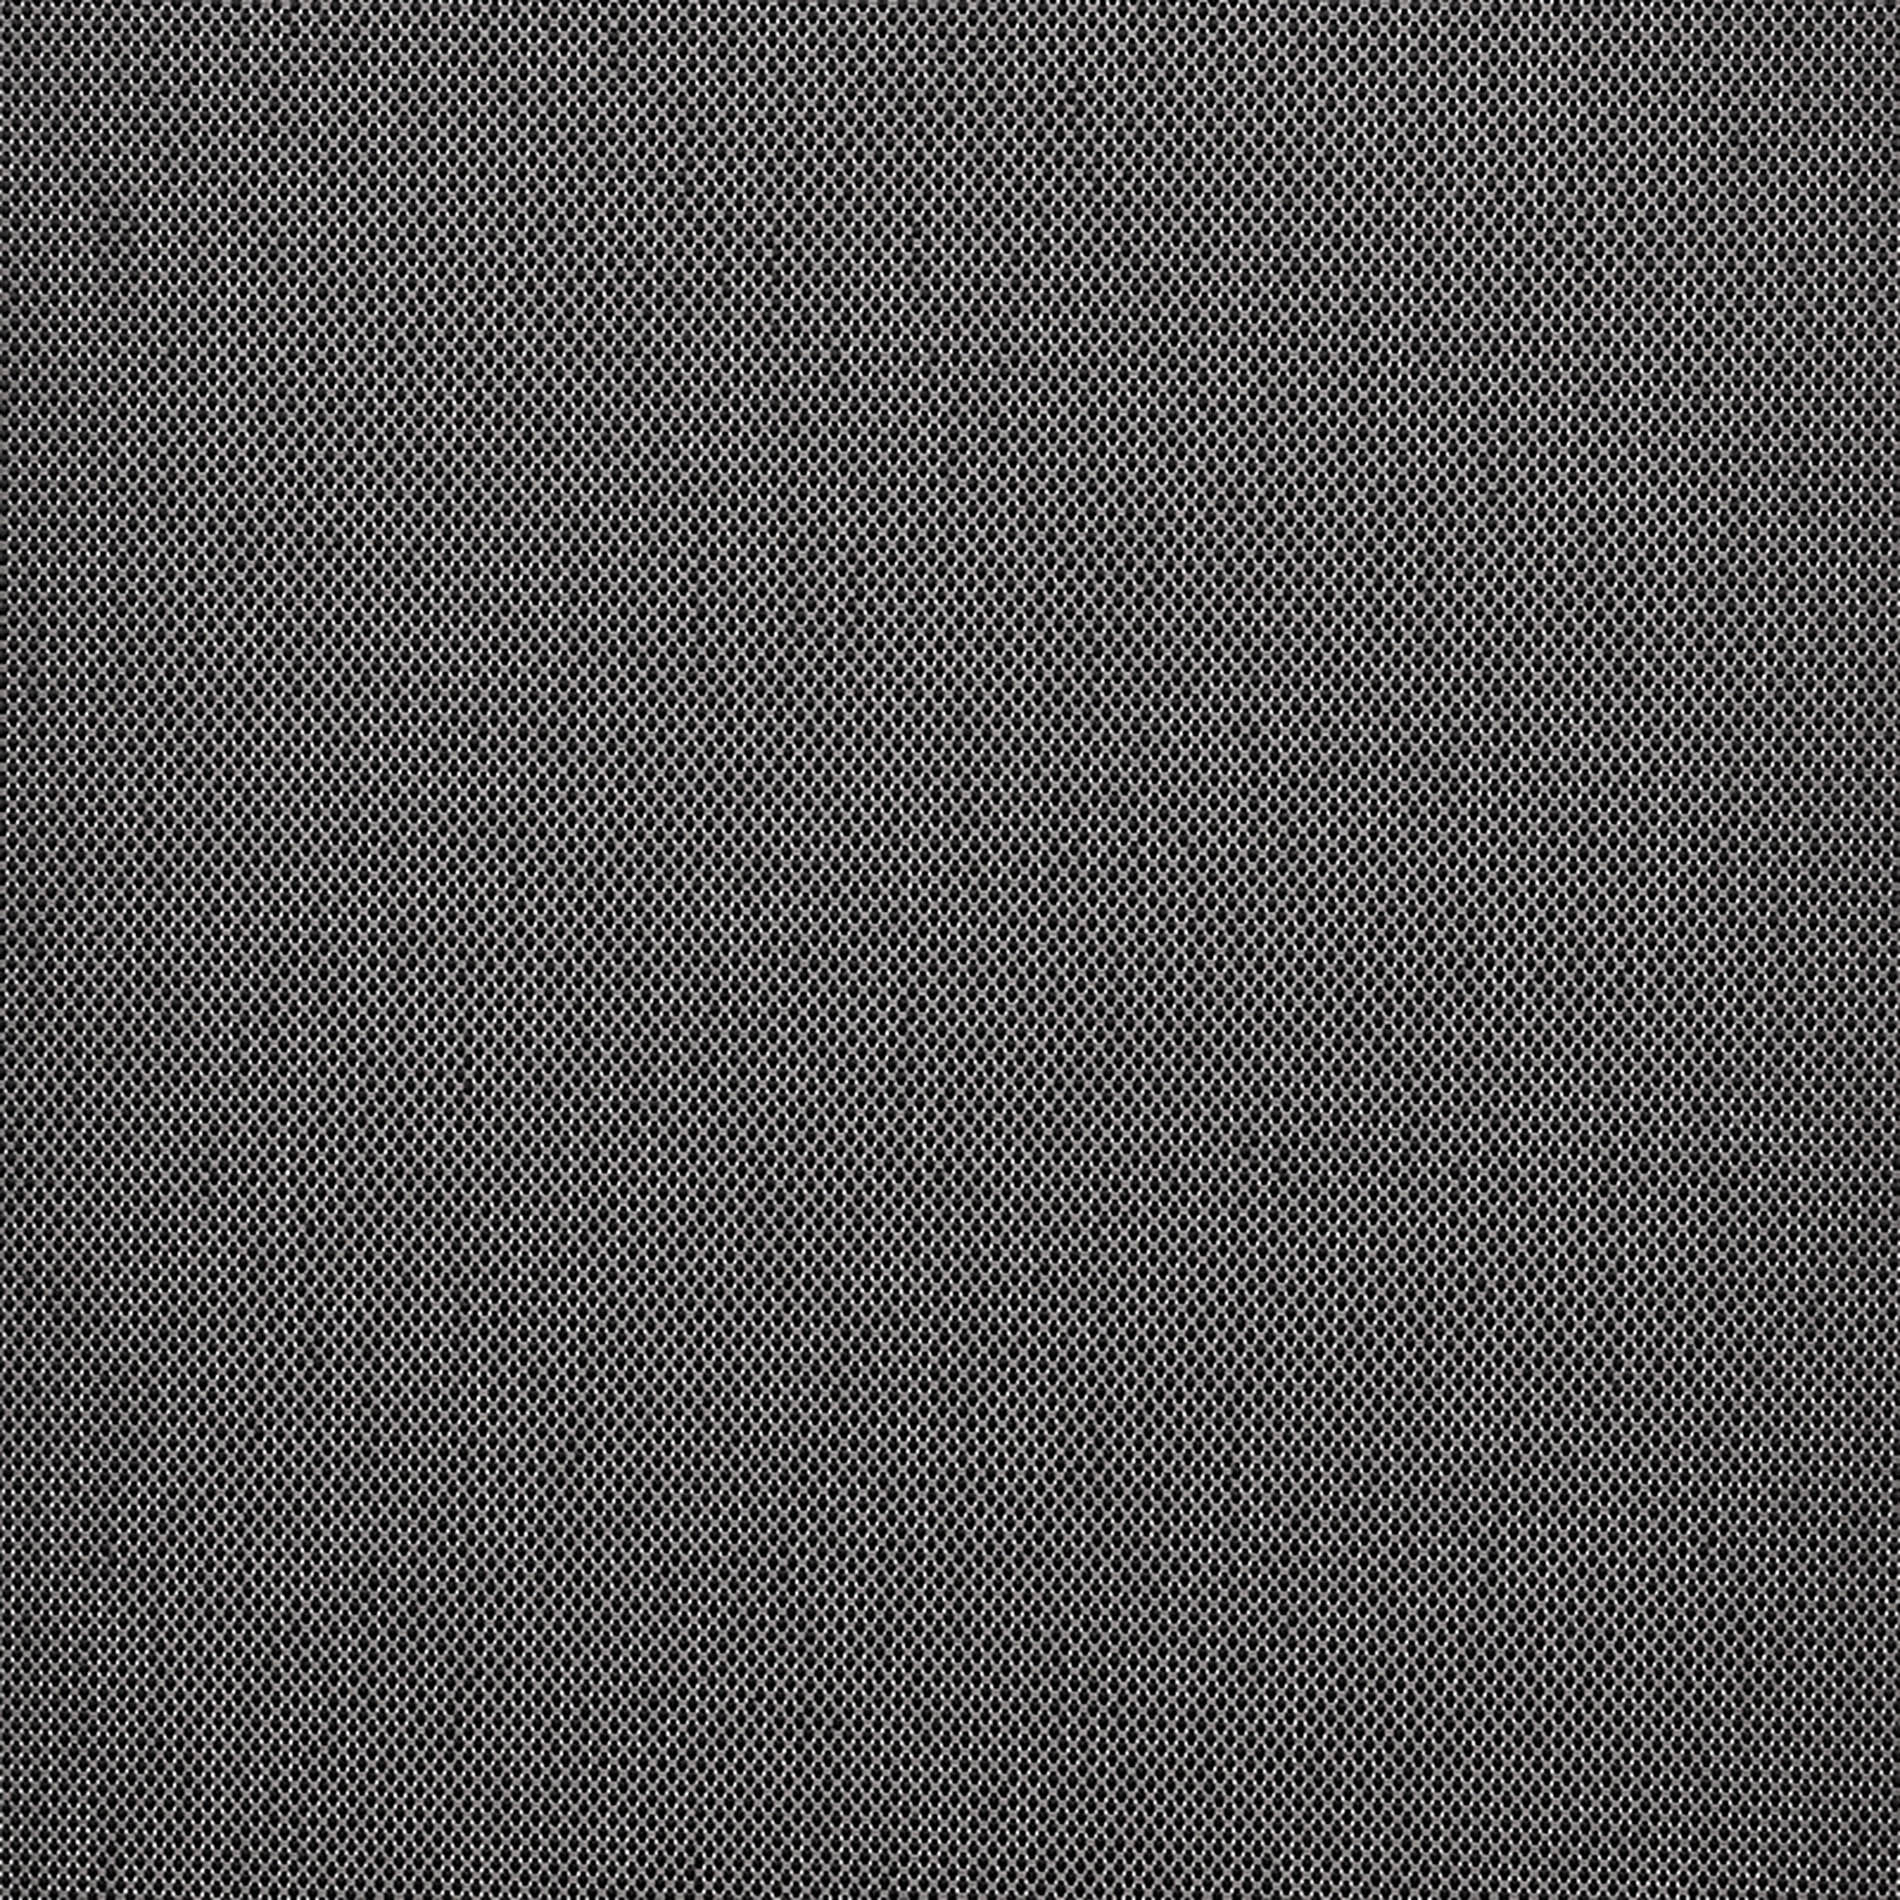 Altex - Fabric - ARGON_5 - Charcoal/Grey - ARGON_504